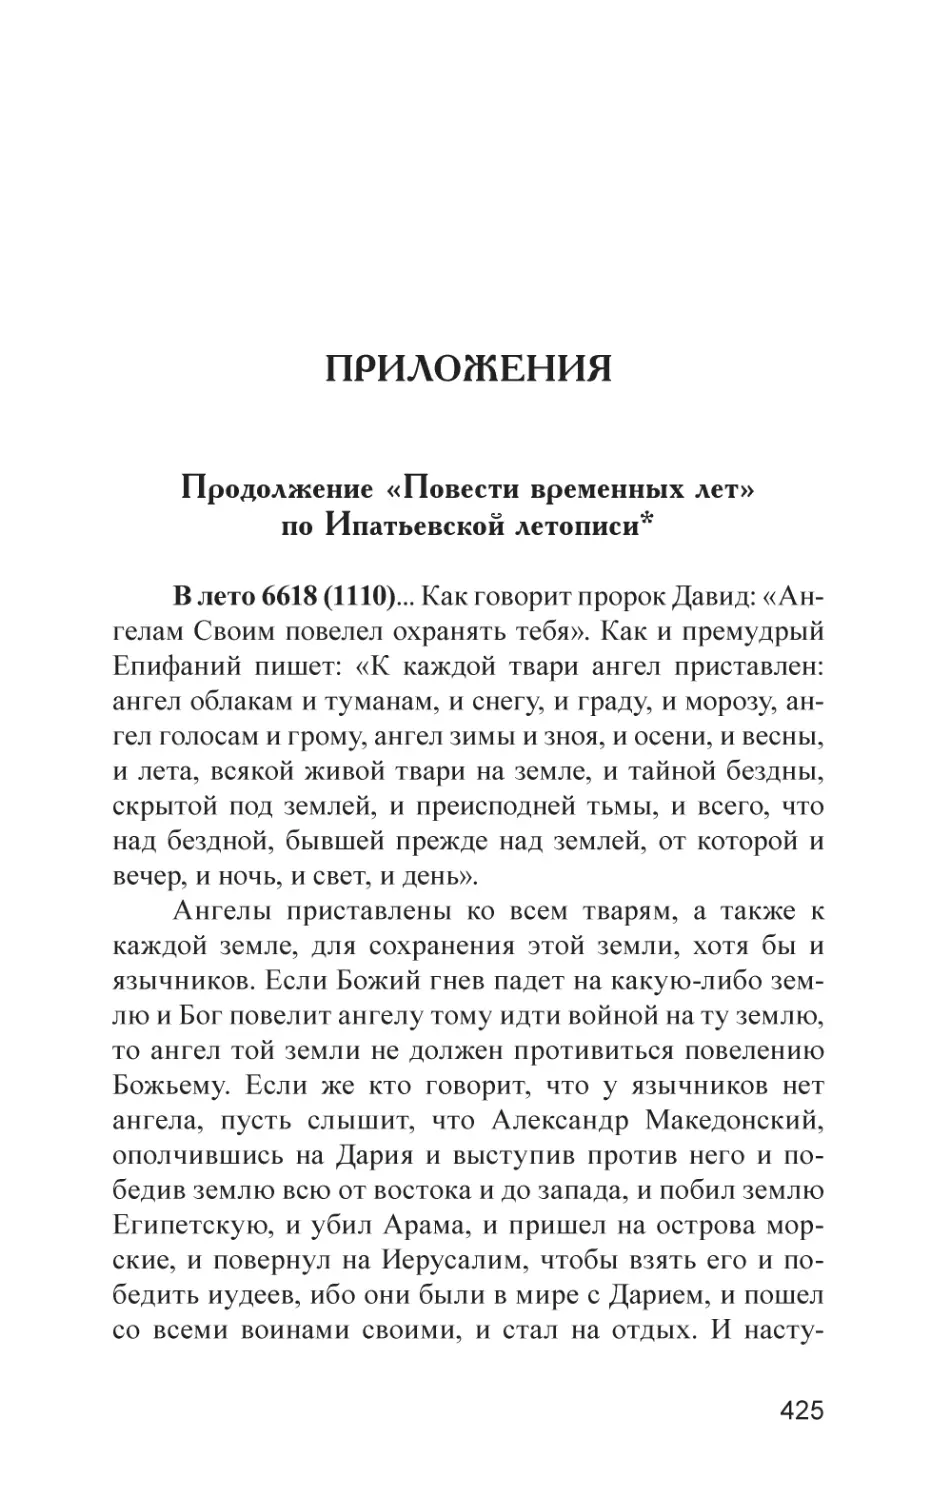 Приложения
Продолжение «Повести временных лет» по Ипатьевской летописи